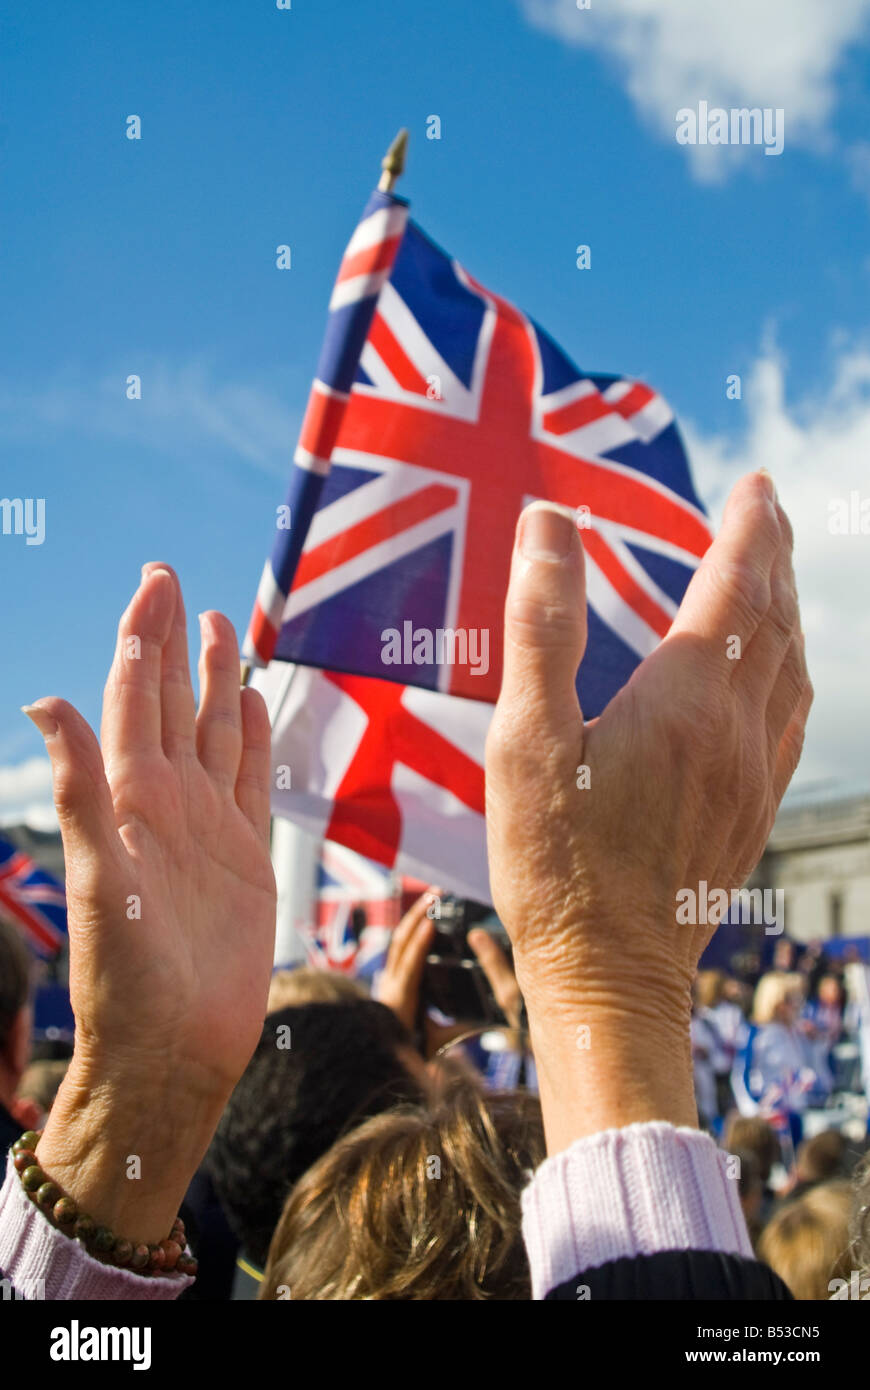 Close up vertical des foules applaudissant et forme Union Jack et St George Cross drapeaux lors d'une cérémonie organisée à Londres. Banque D'Images